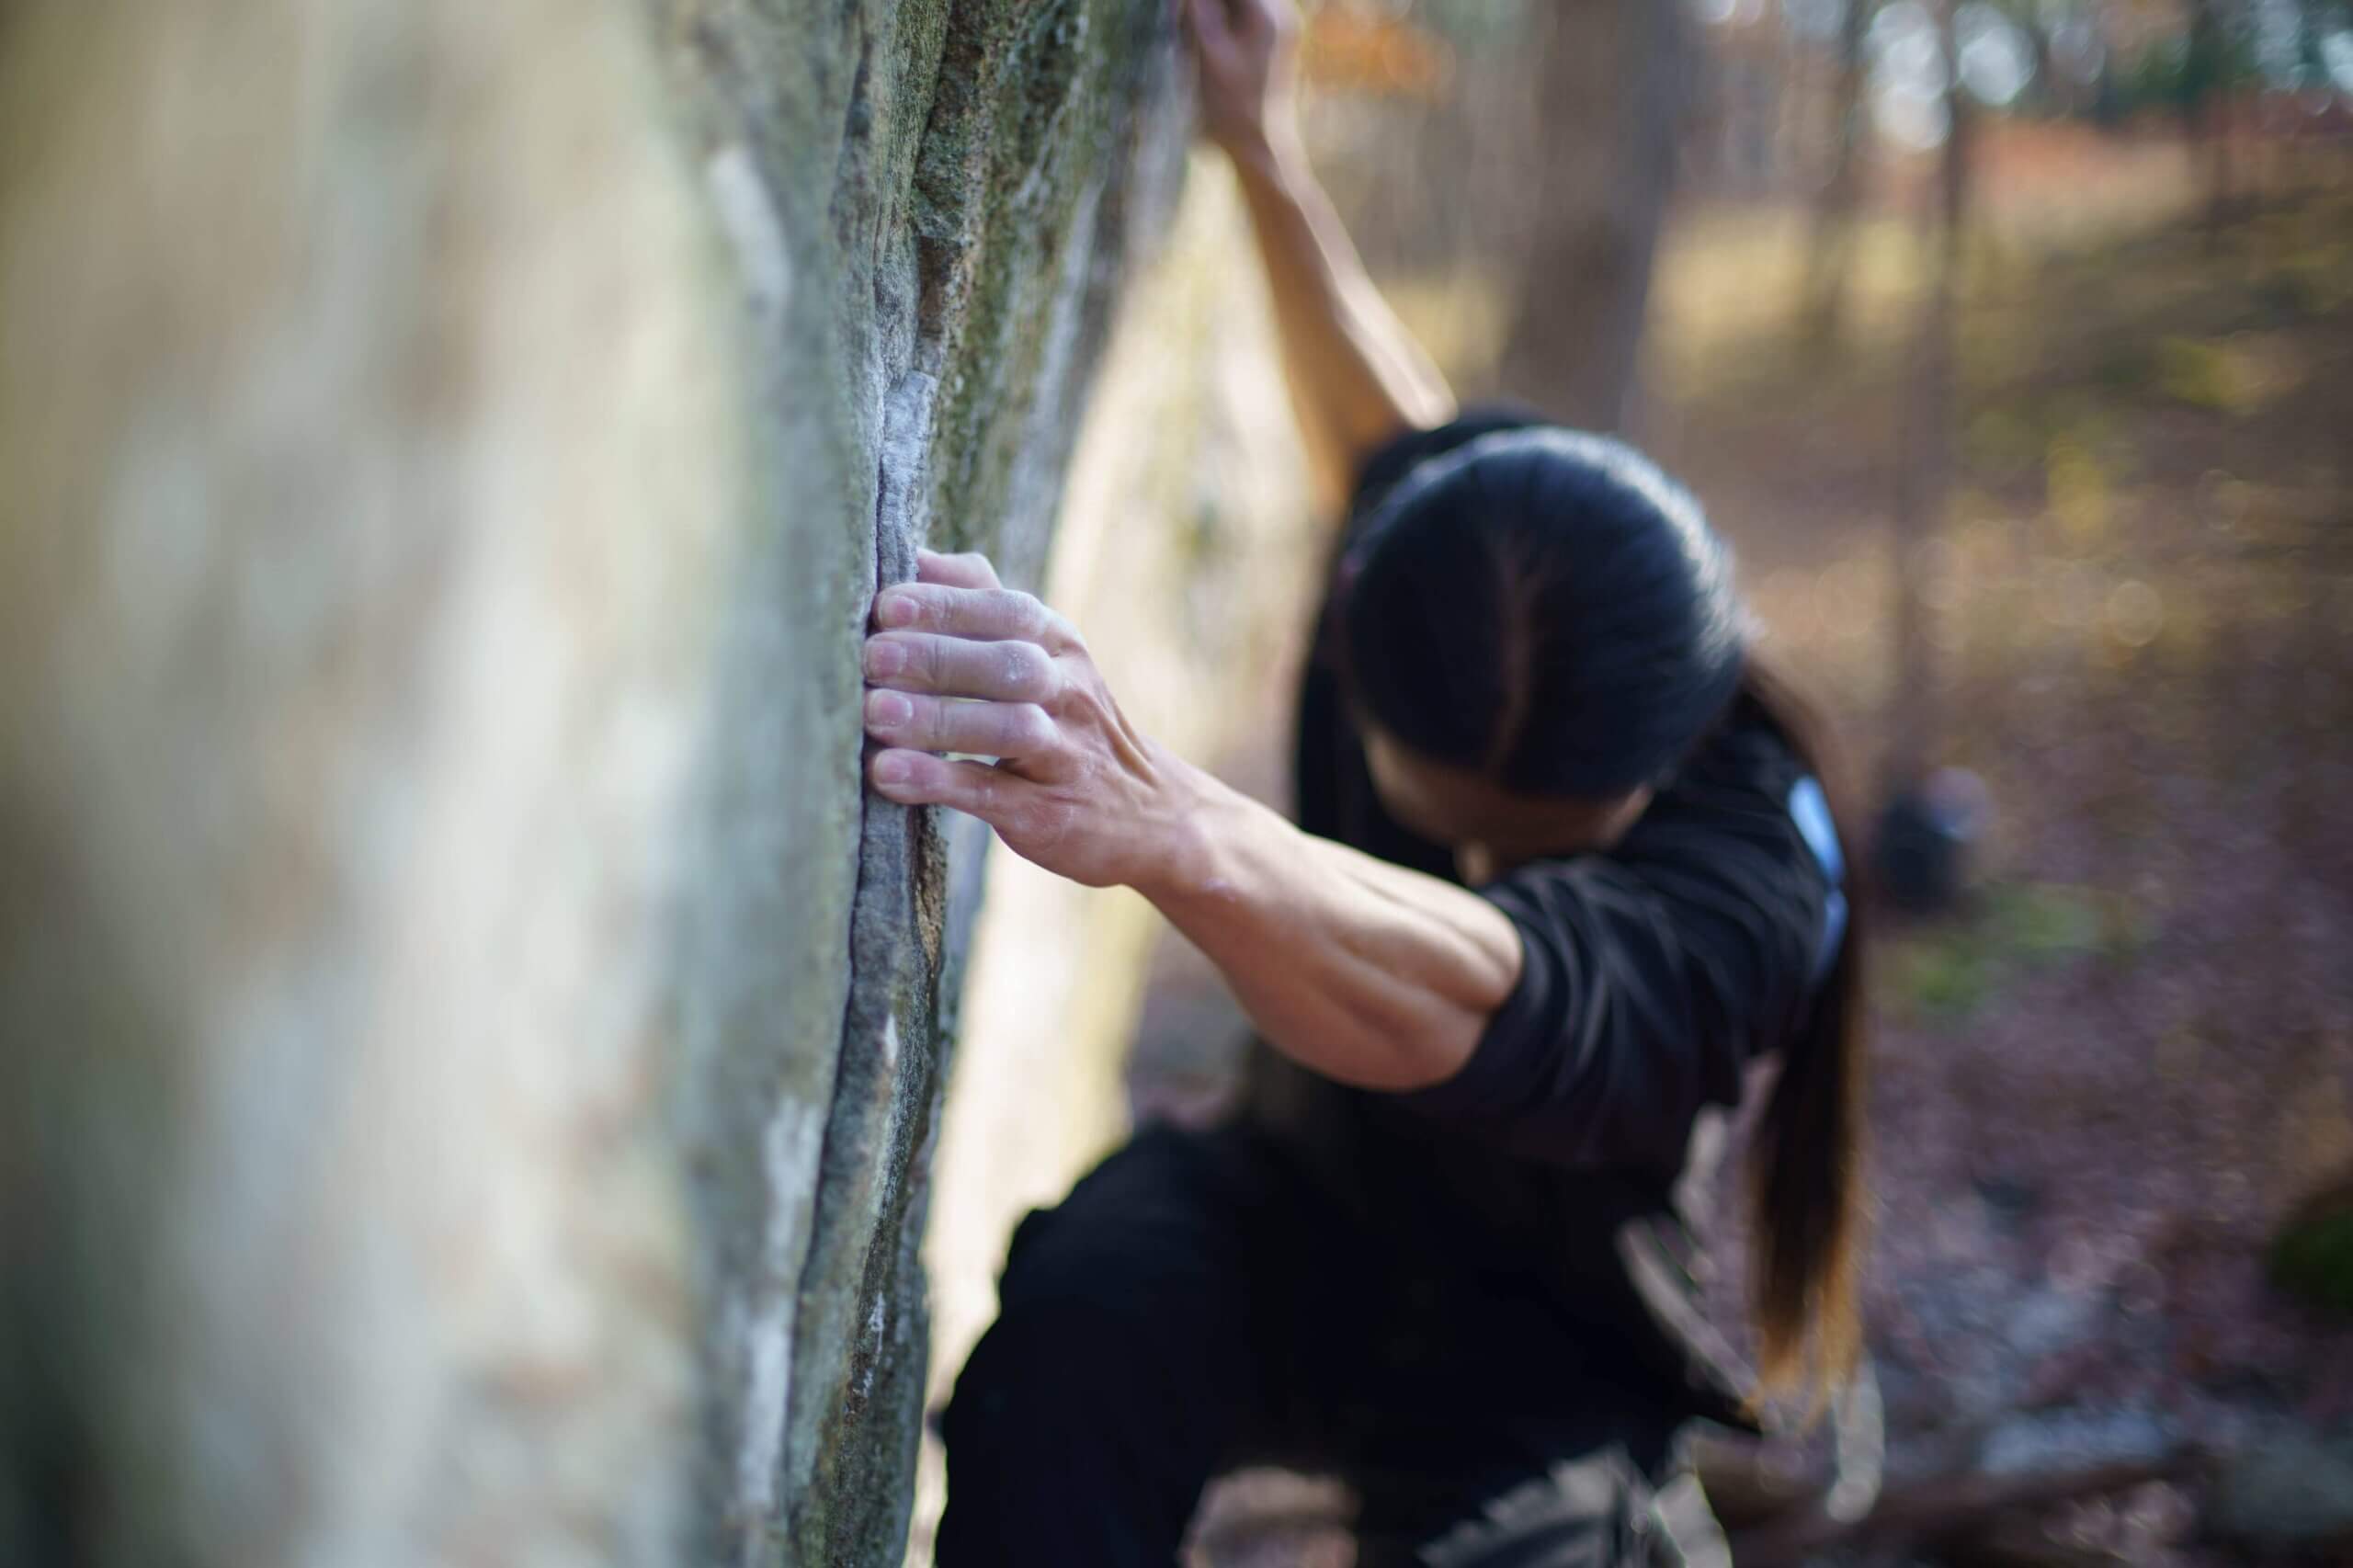 Sunna Shinn climbing an outdoor boulder.